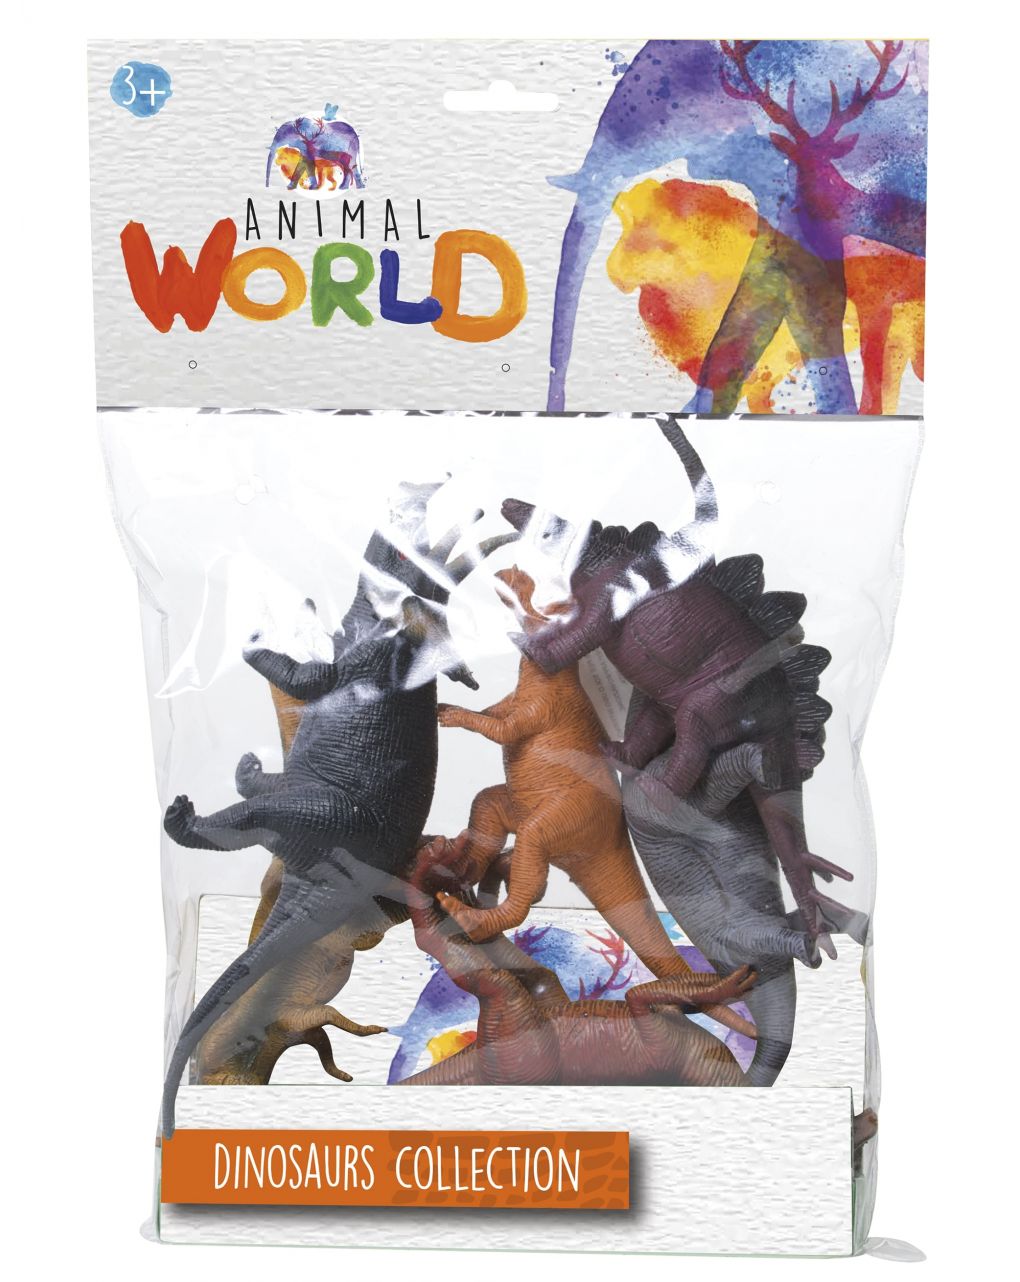 Mundo animal - conjunto de dinossauros - coleção de dinossauros - Animal World